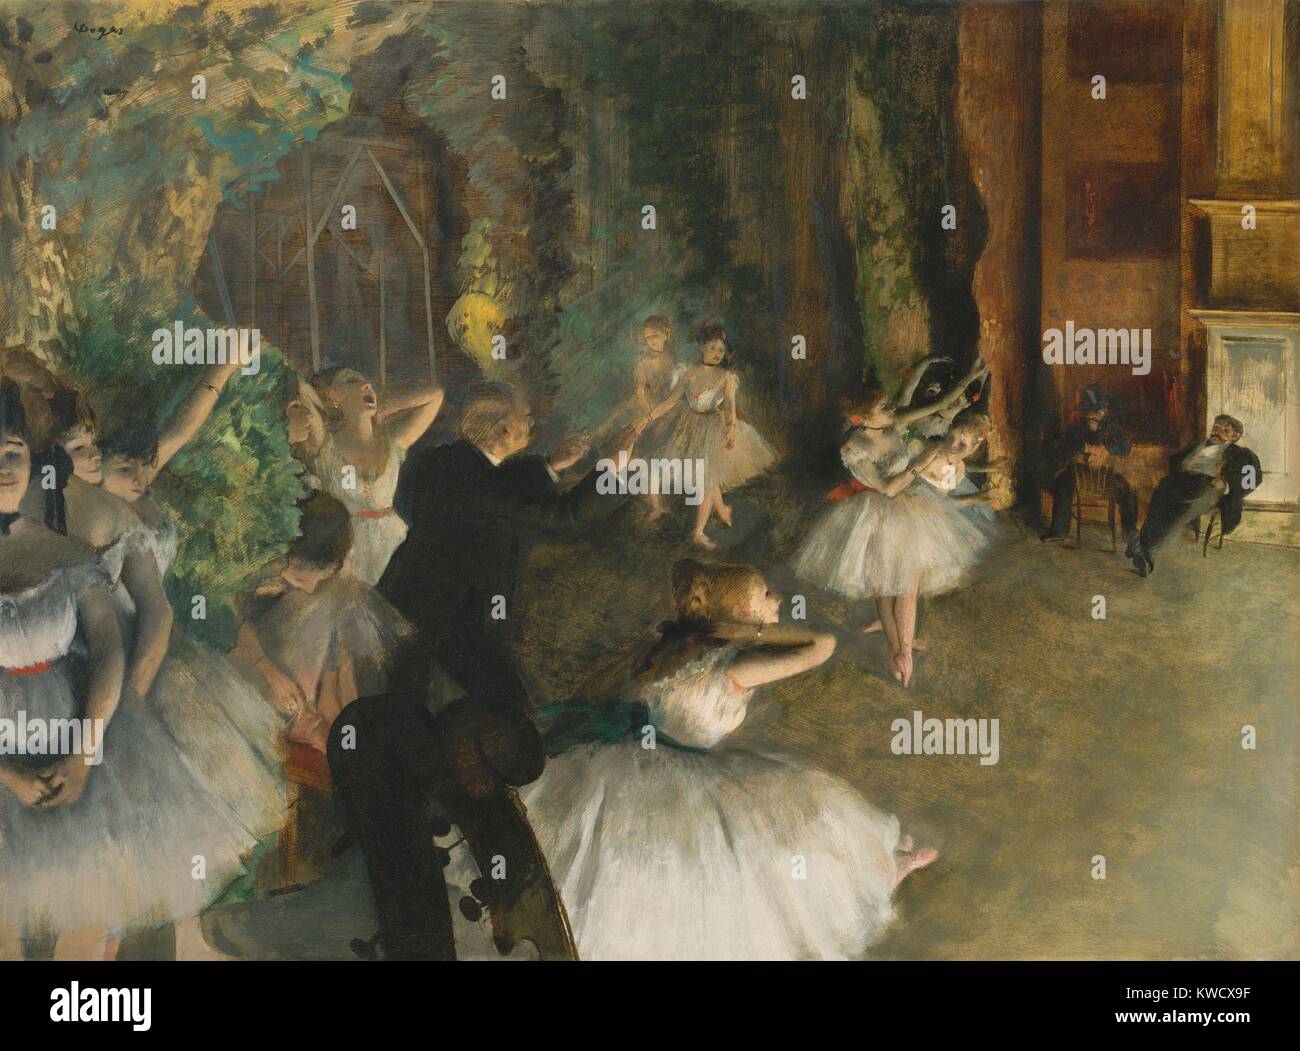 Ensayo del ballet en el escenario, de Edgar Degas, 1874, el impresionista francés de dibujo de medios mixtos. Bailarinas de pie en posturas naturales offstage, mientras los hombres observar los bailarines en el escenario. Hay divertido violín recortada se desplaza en la parte inferior izquierda (BSLOC 2017 3 103) Foto de stock